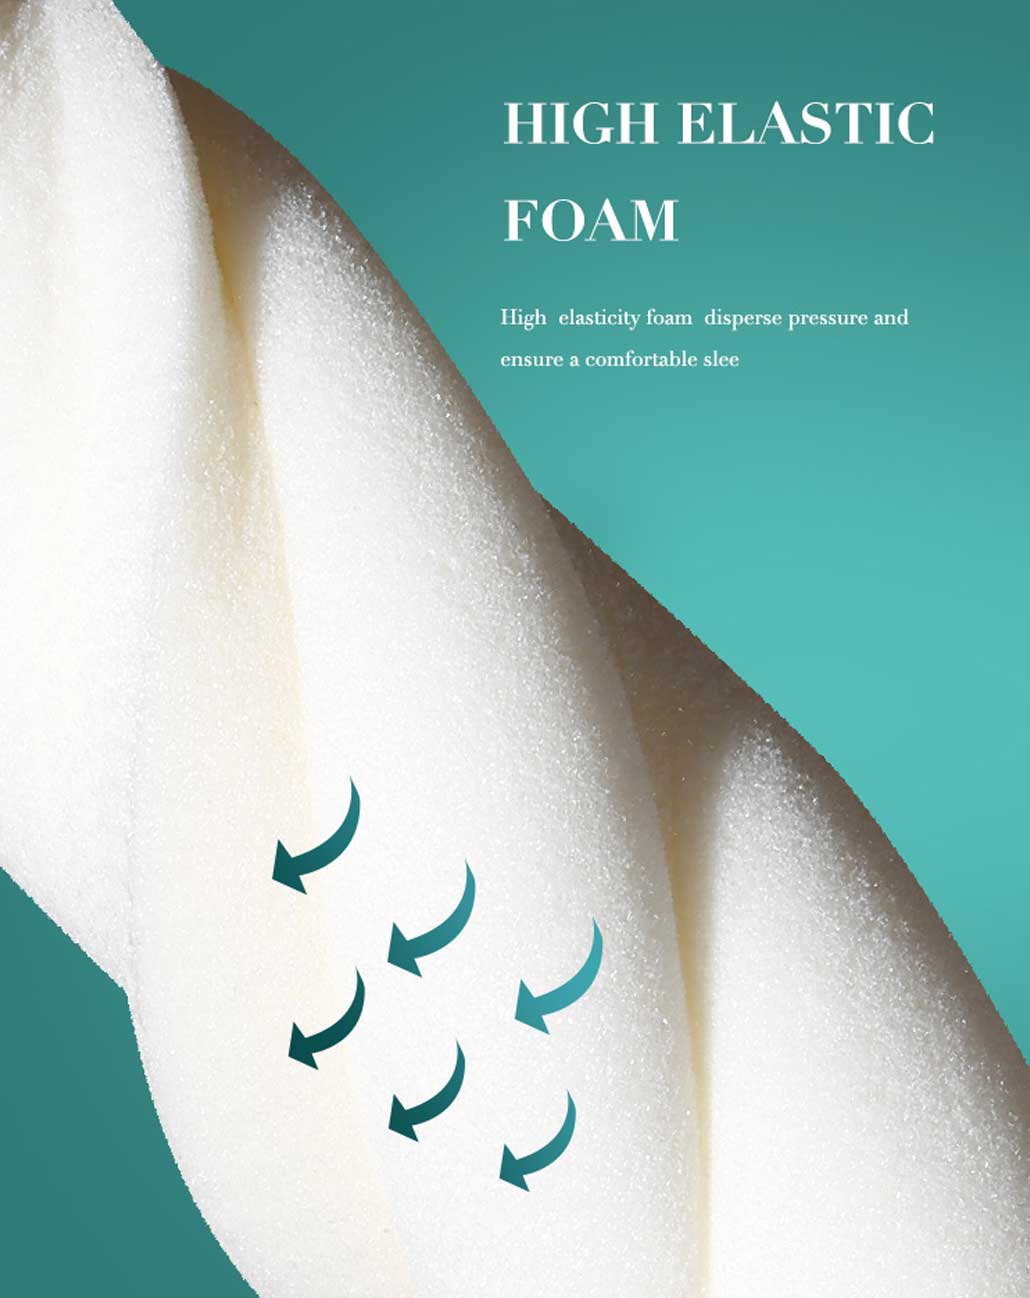 Top Rated Memory Foam Pillow